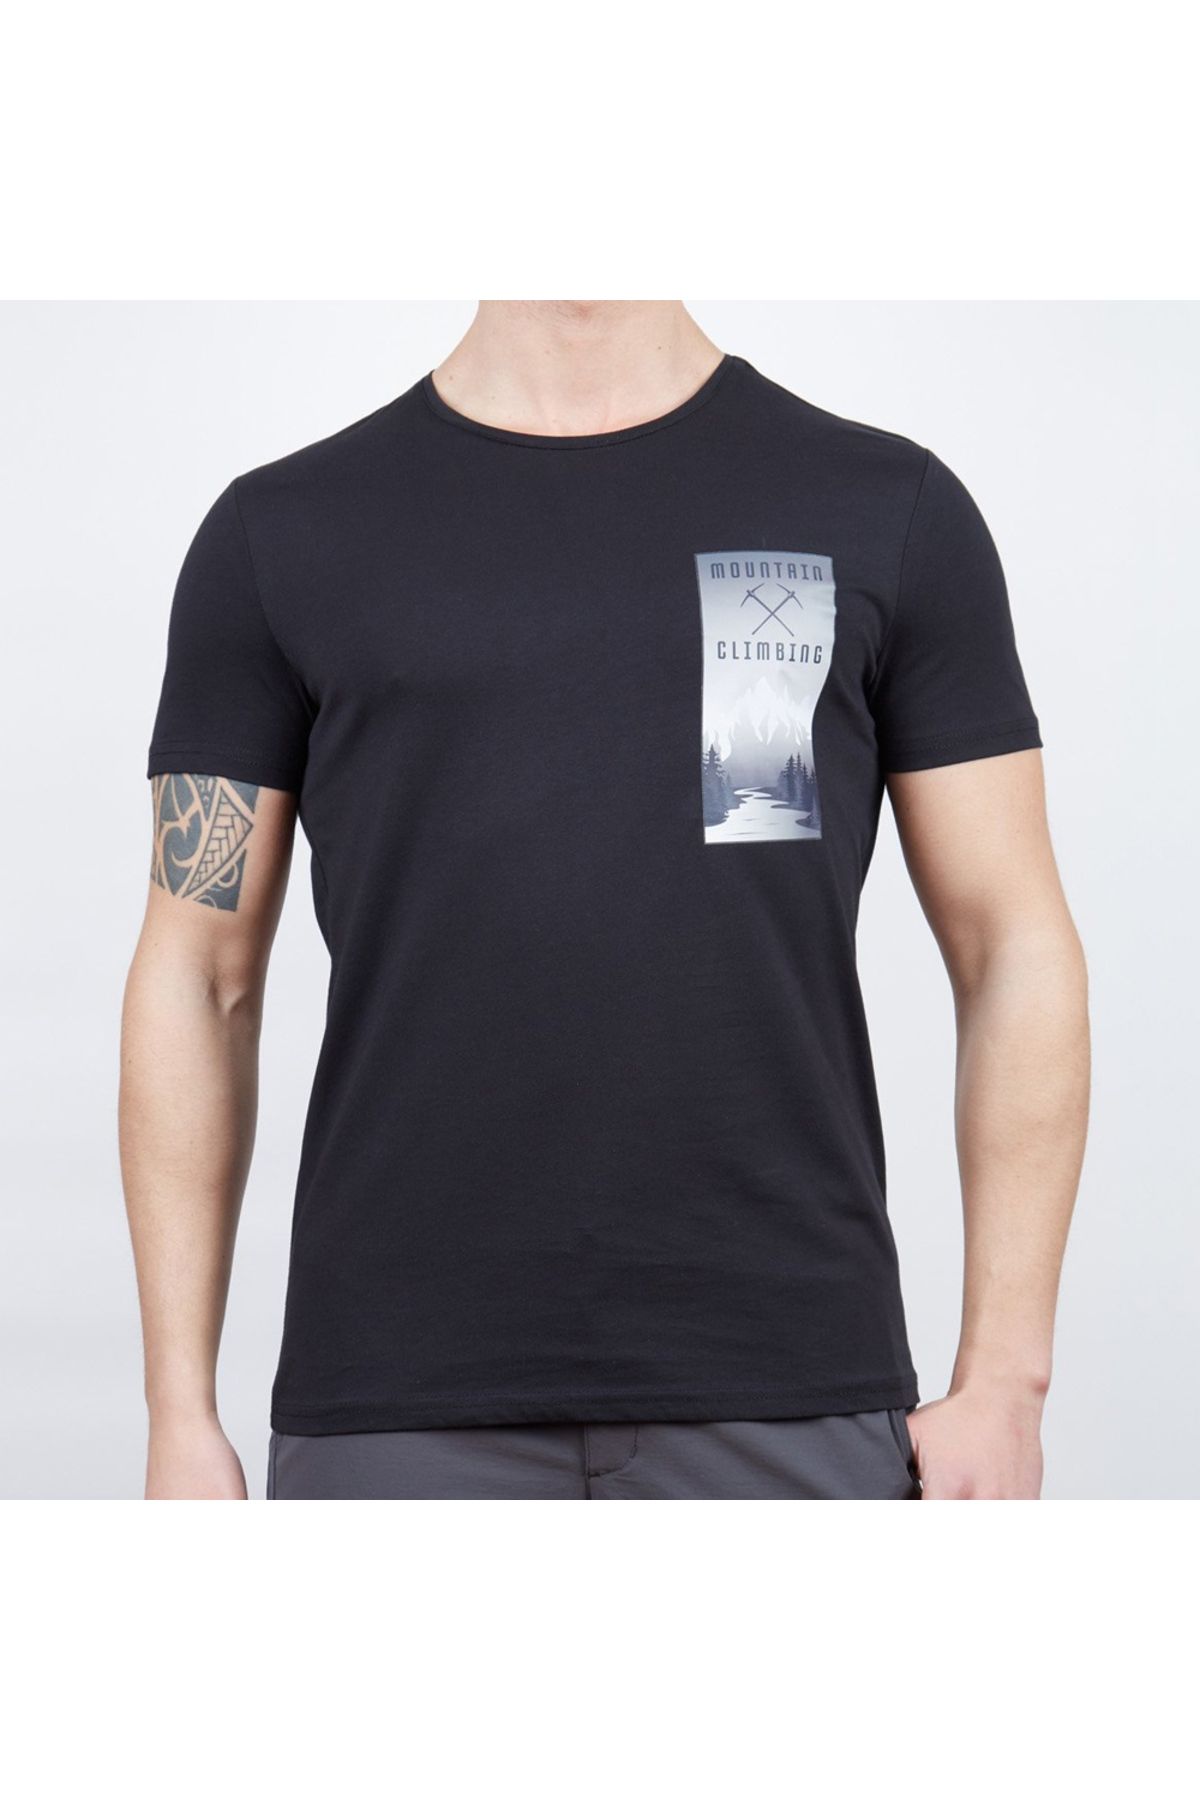 Alpinist Lex Erkek T-shirt Siyah S (600606)